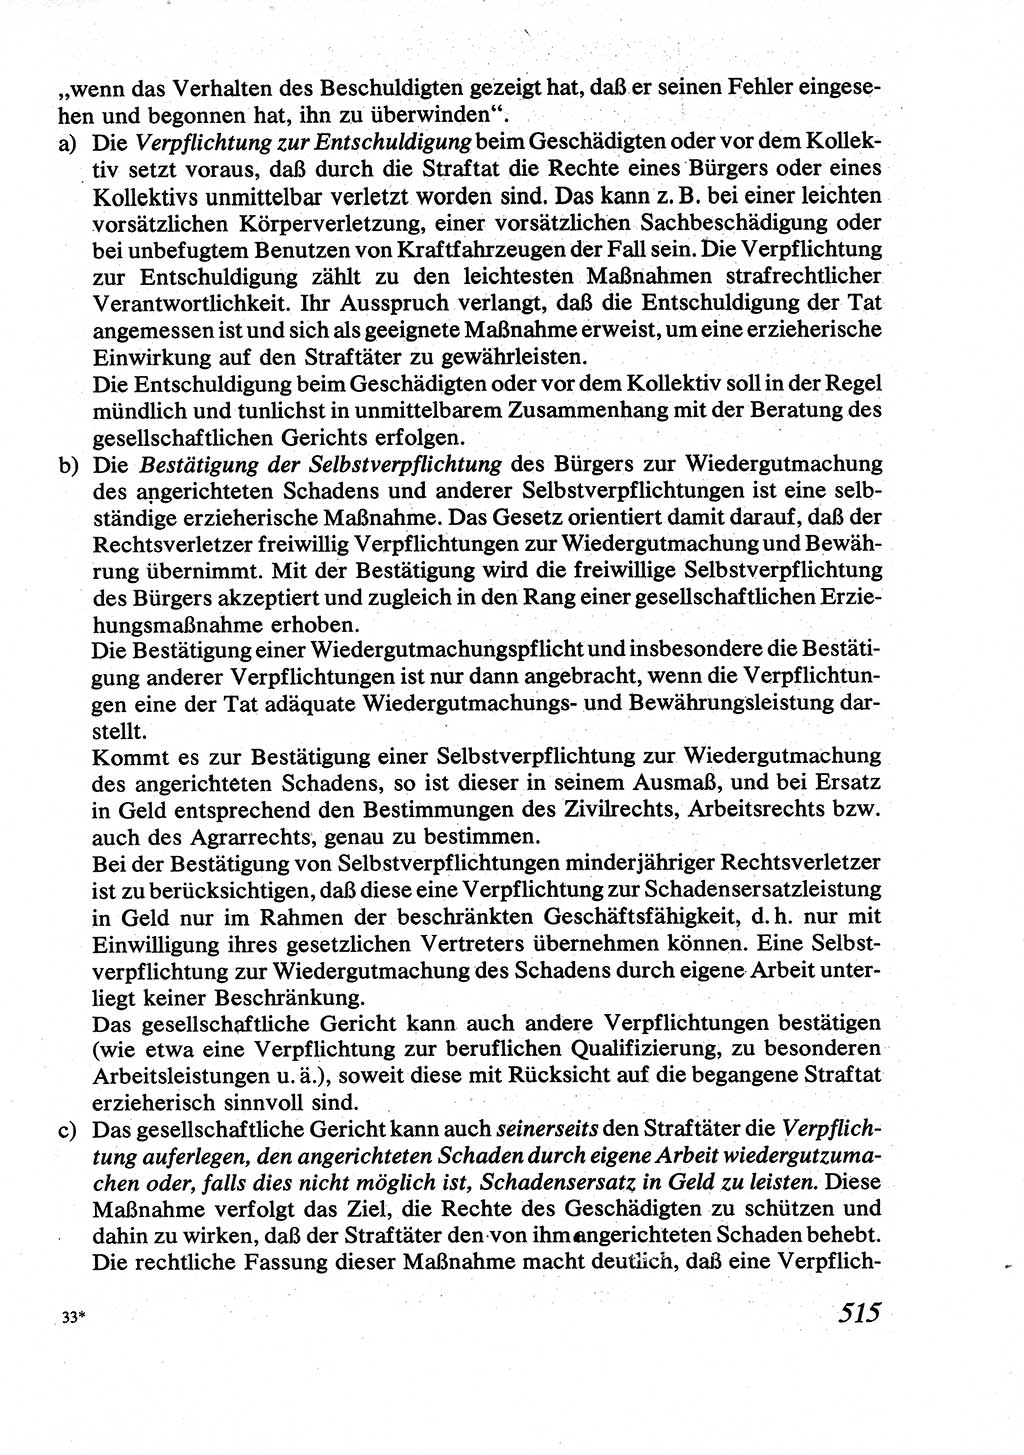 Strafrecht [Deutsche Demokratische Republik (DDR)], Allgemeiner Teil, Lehrbuch 1976, Seite 515 (Strafr. DDR AT Lb. 1976, S. 515)